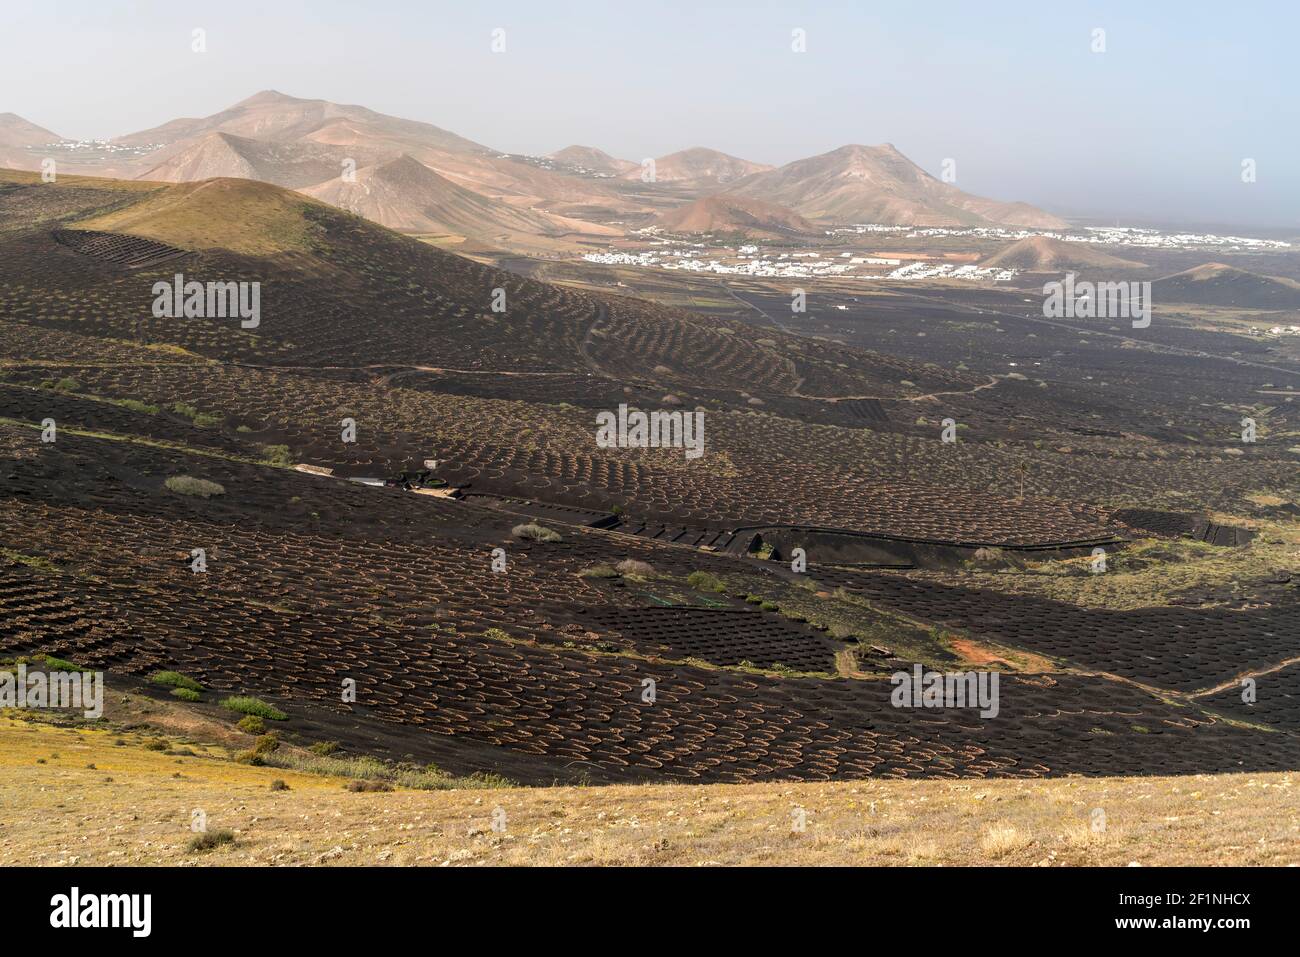 Landschaft mit Trockenfeldbau von Wein bei La Geria, Insel Lanzarote, Kanarische Inseln, Spanien |  Landscape with dryland wine farming near La Geria Stock Photo